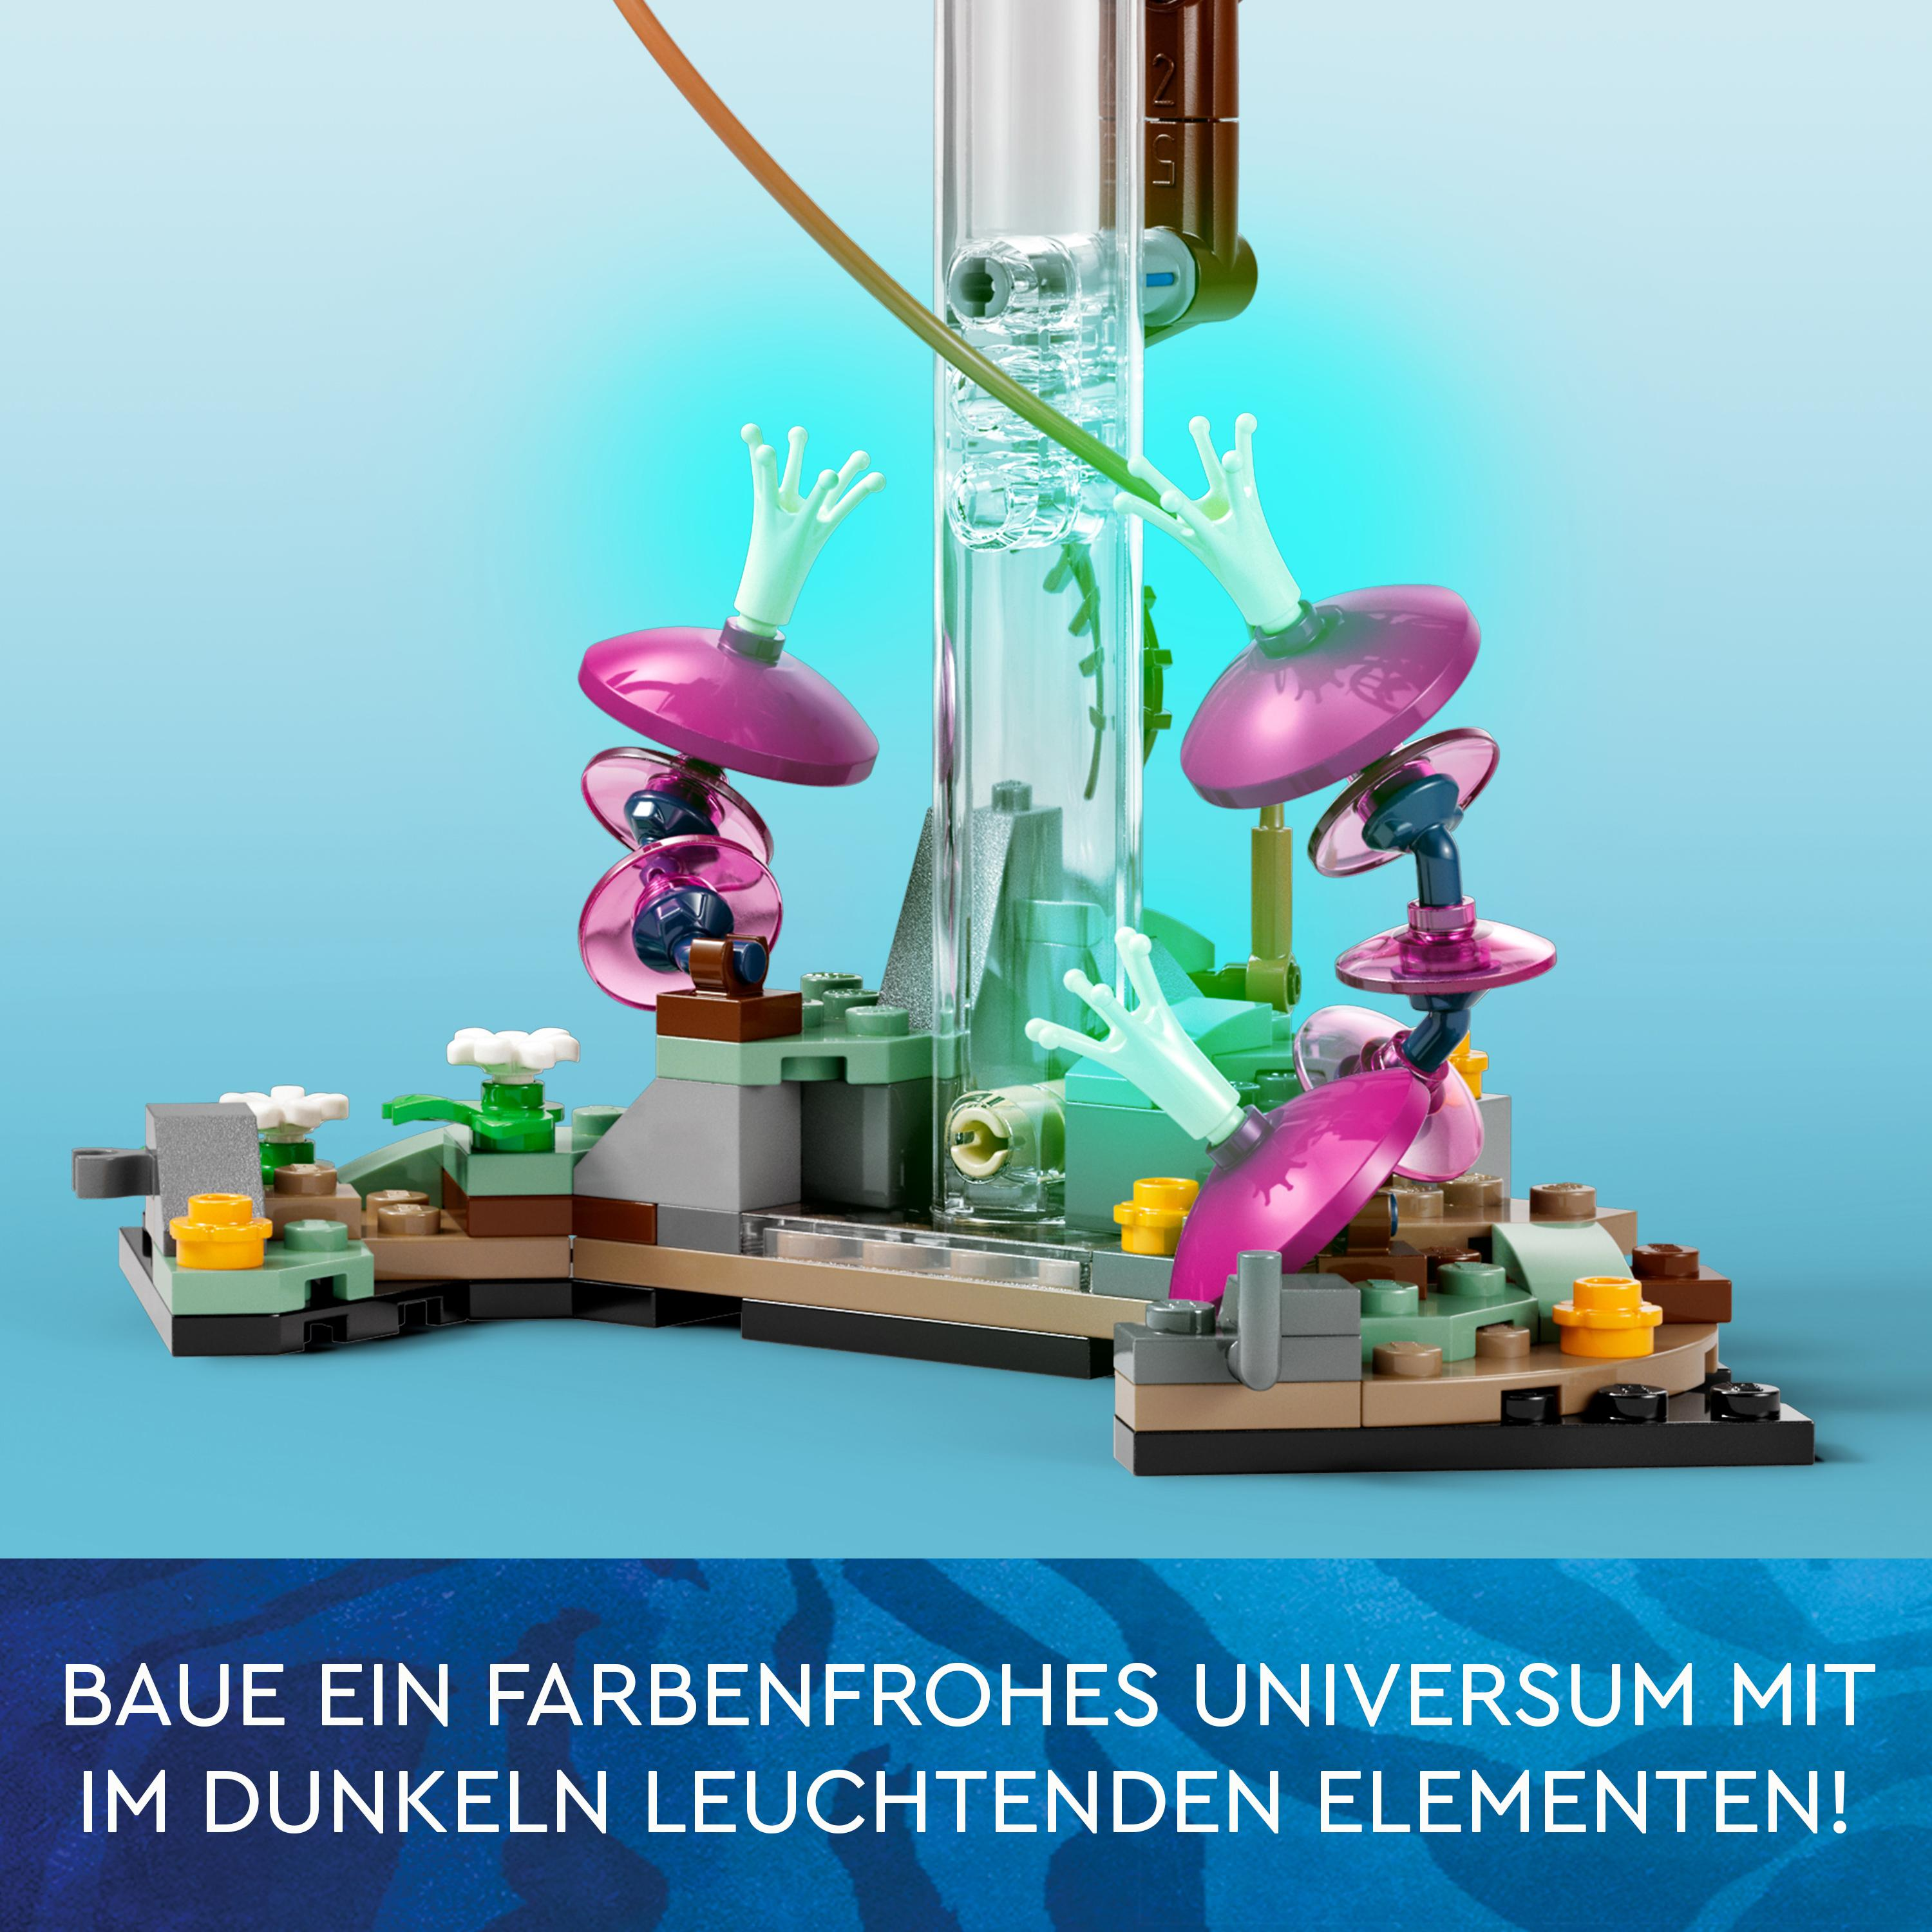 Avatar RDA Berge: und Site Bausatz, Samson 75573 Mehrfarbig Schwebende LEGO 26